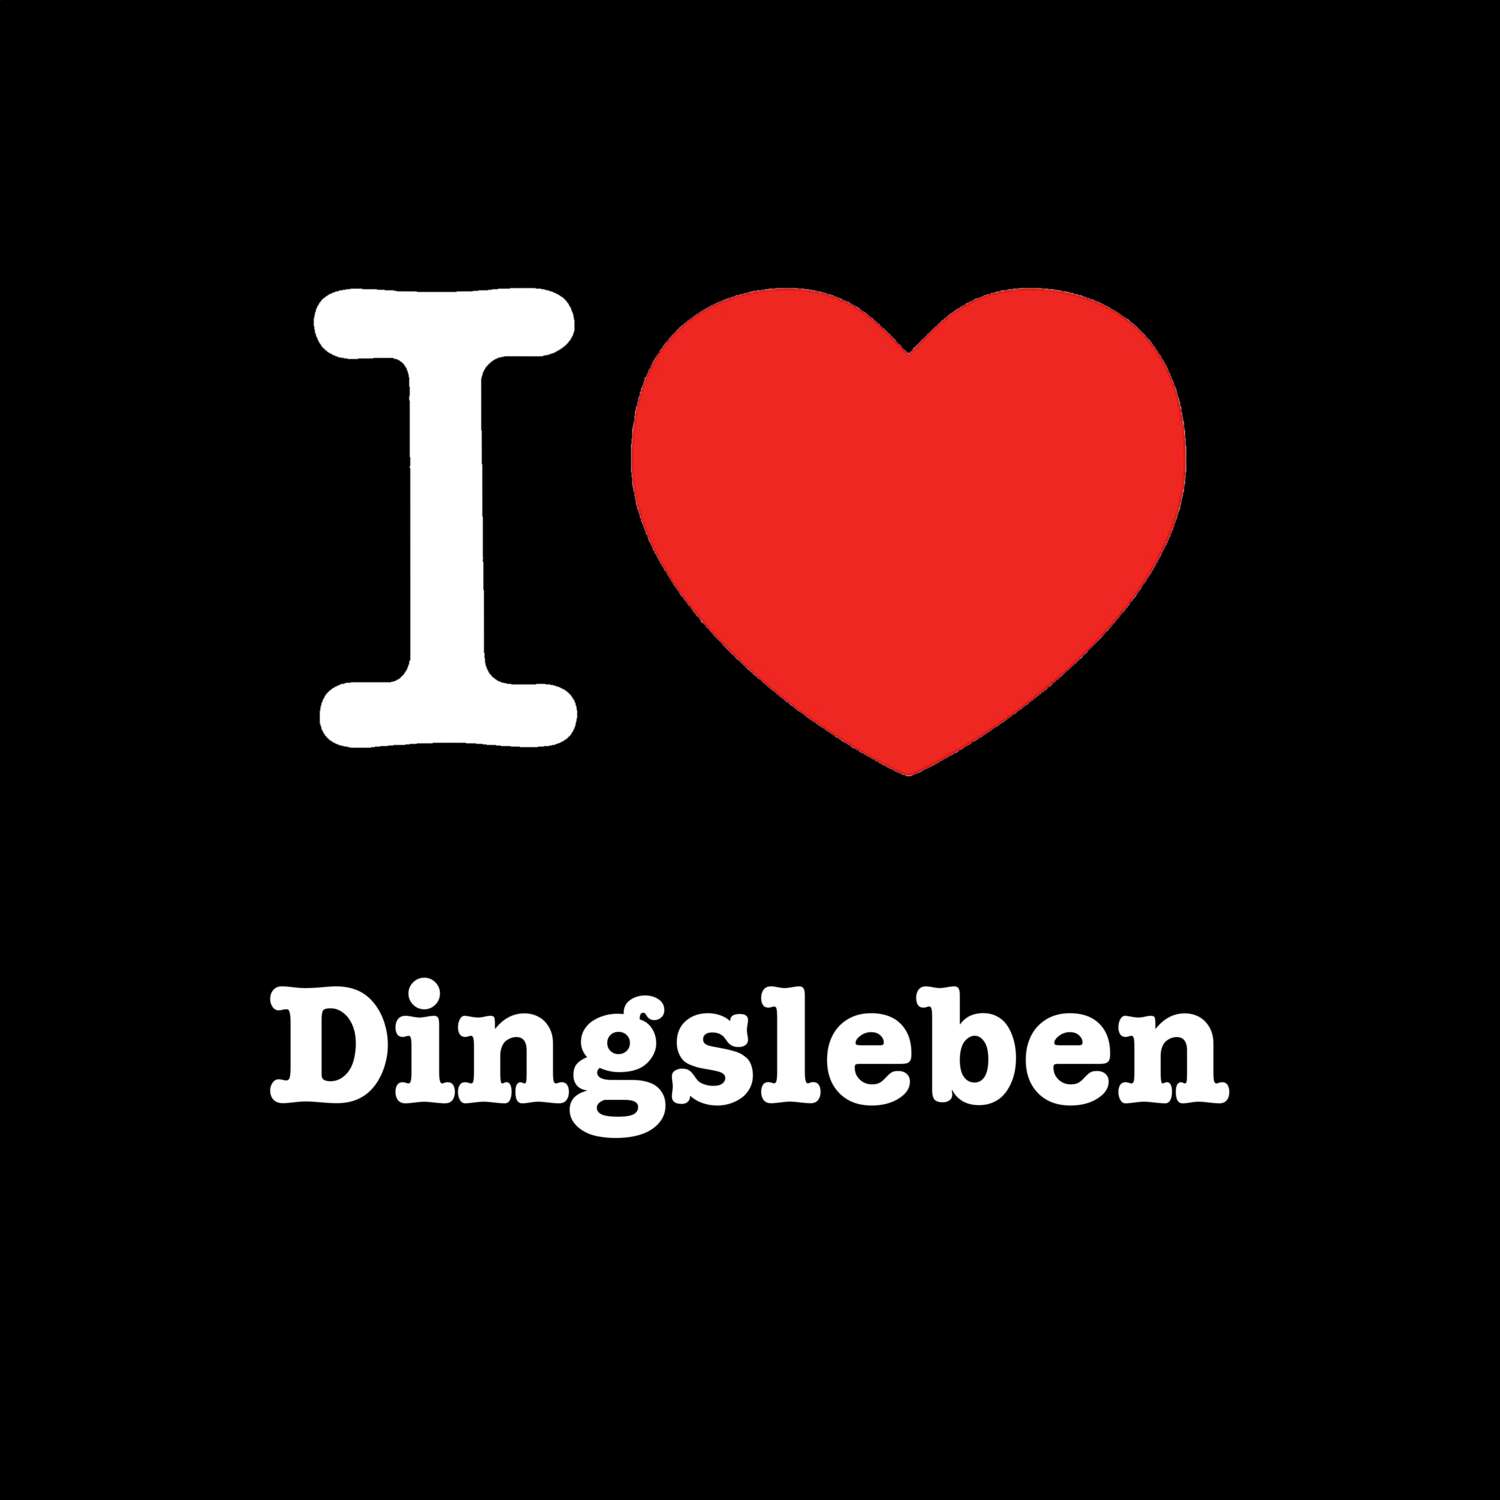 Dingsleben T-Shirt »I love«